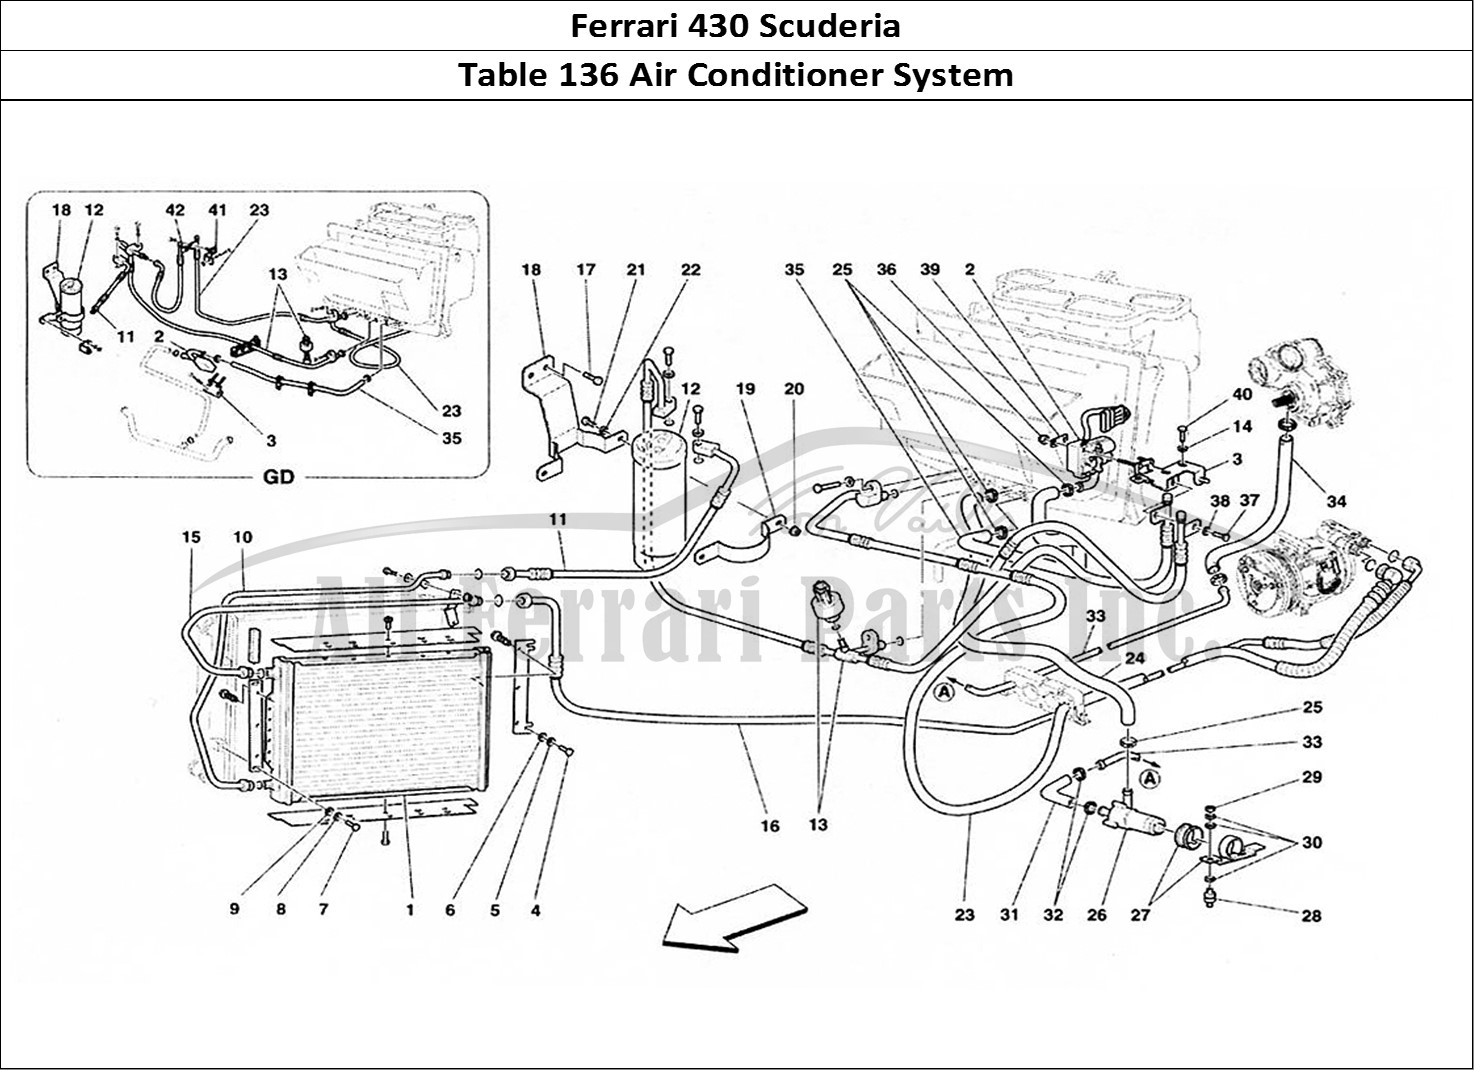 Ferrari Parts Ferrari 430 Scuderia Page 136 Air Conditioning System